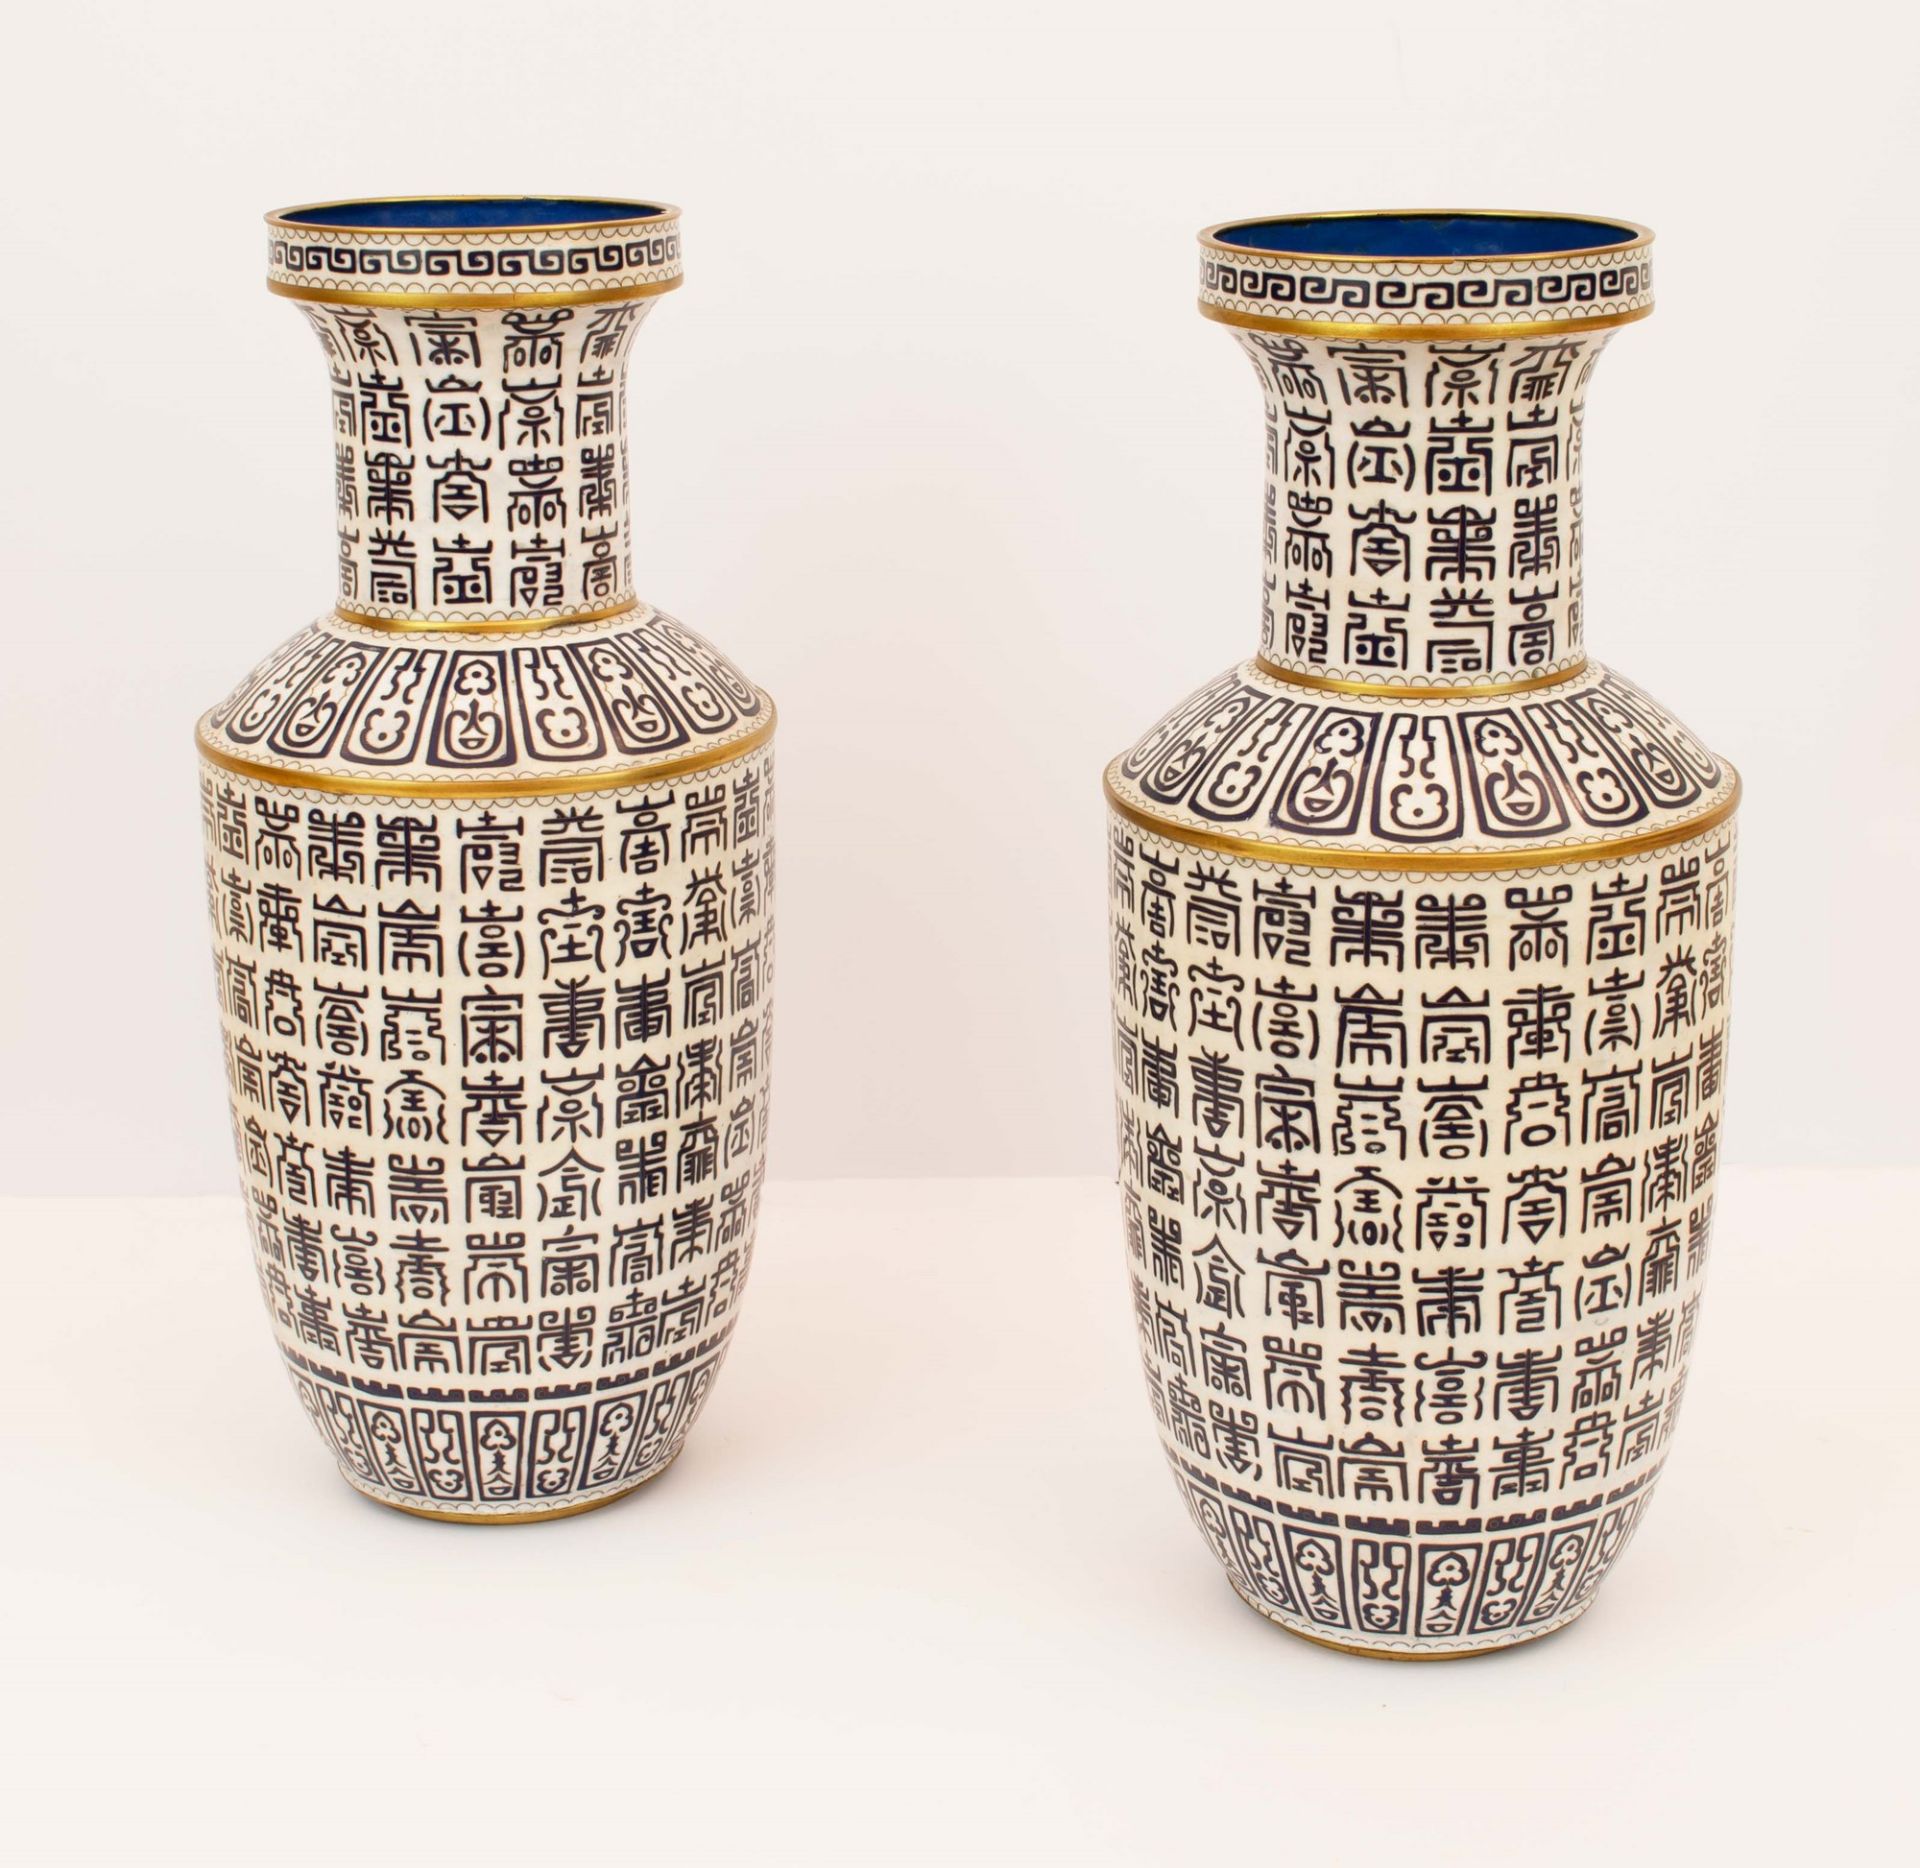 Coppia di vasi cloissonet decorati con caratteri zhanshu. Cina, XIX secolo - Image 2 of 2